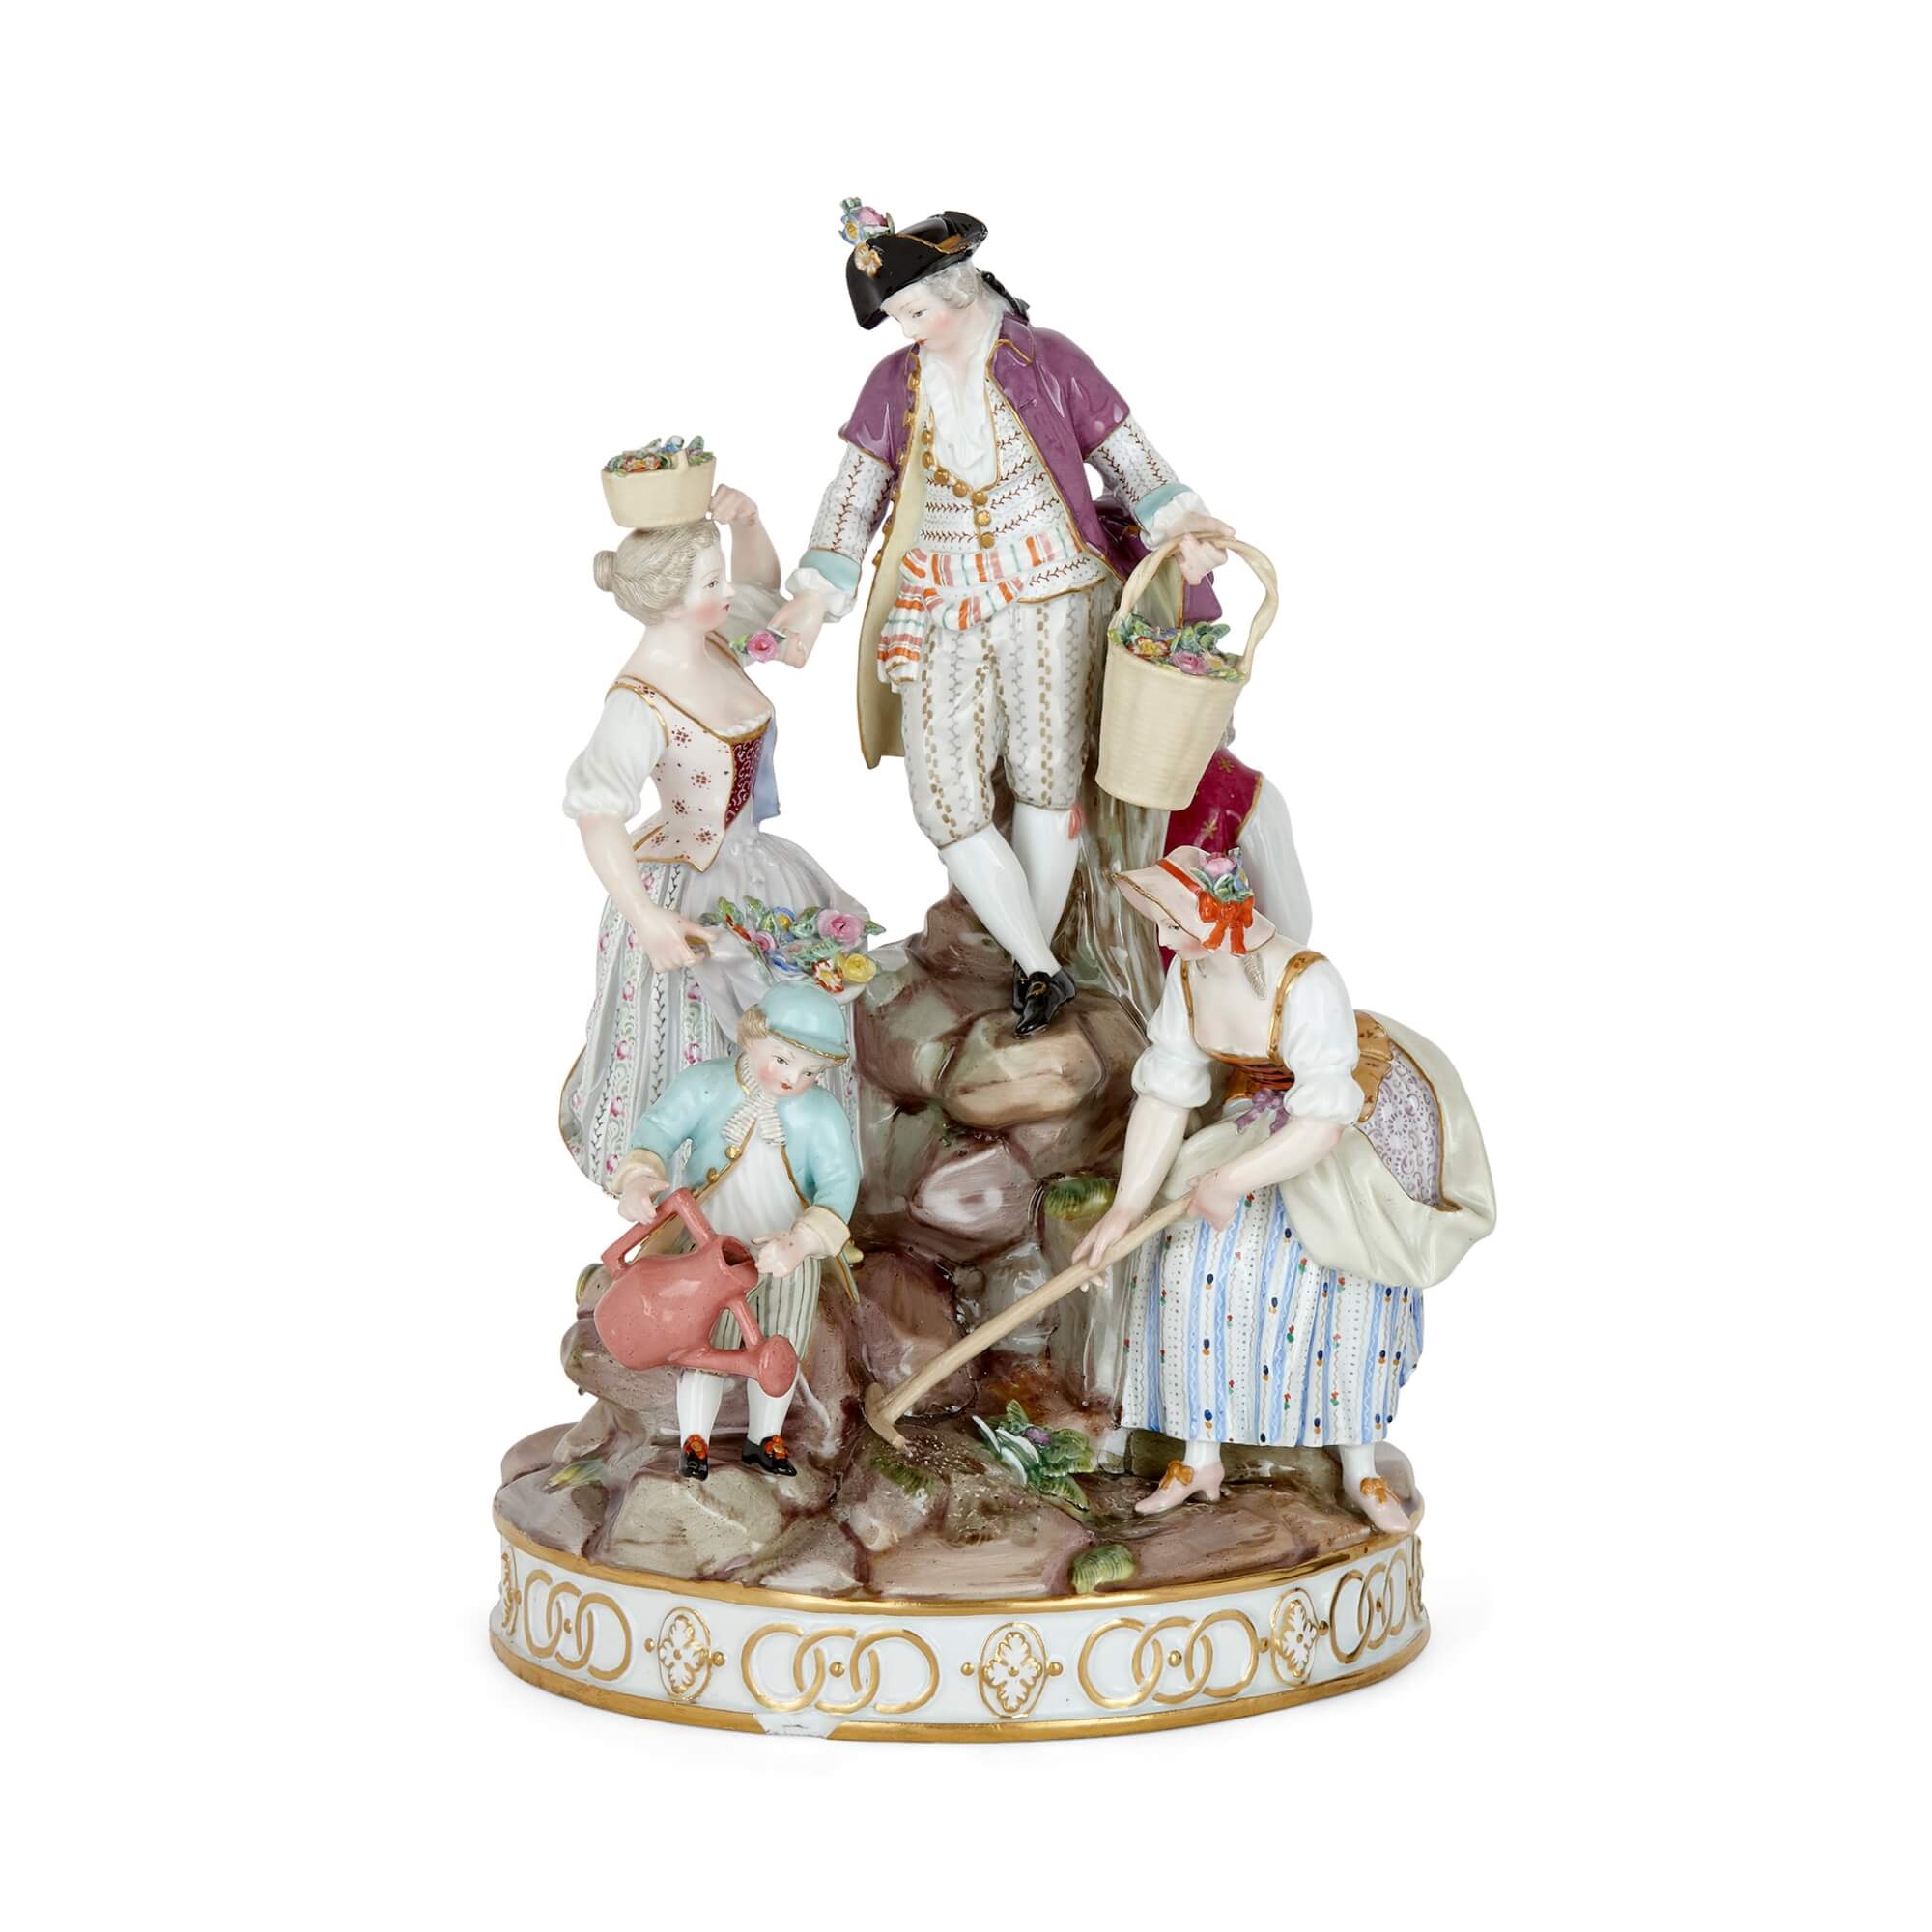 Meissen porcelain decoration figure, 19th century19世纪迈森瓷器